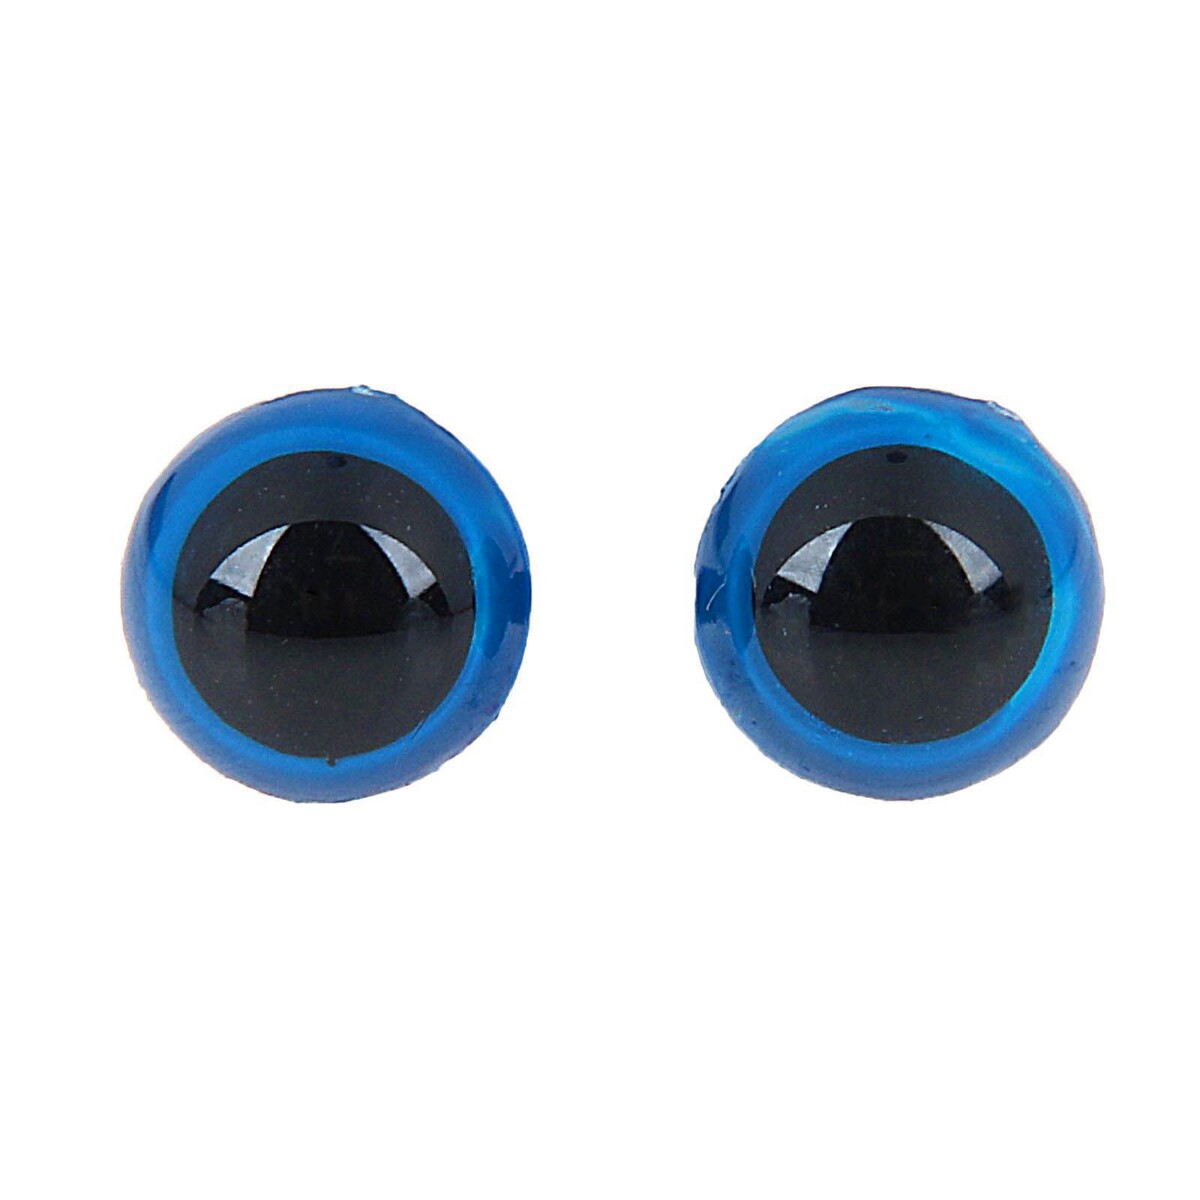 Глаза винтовые с заглушками, полупрозрачные, набор 4 шт, цвет голубой, размер 1 шт: 1,3×1,3 см глаза голубой собаки